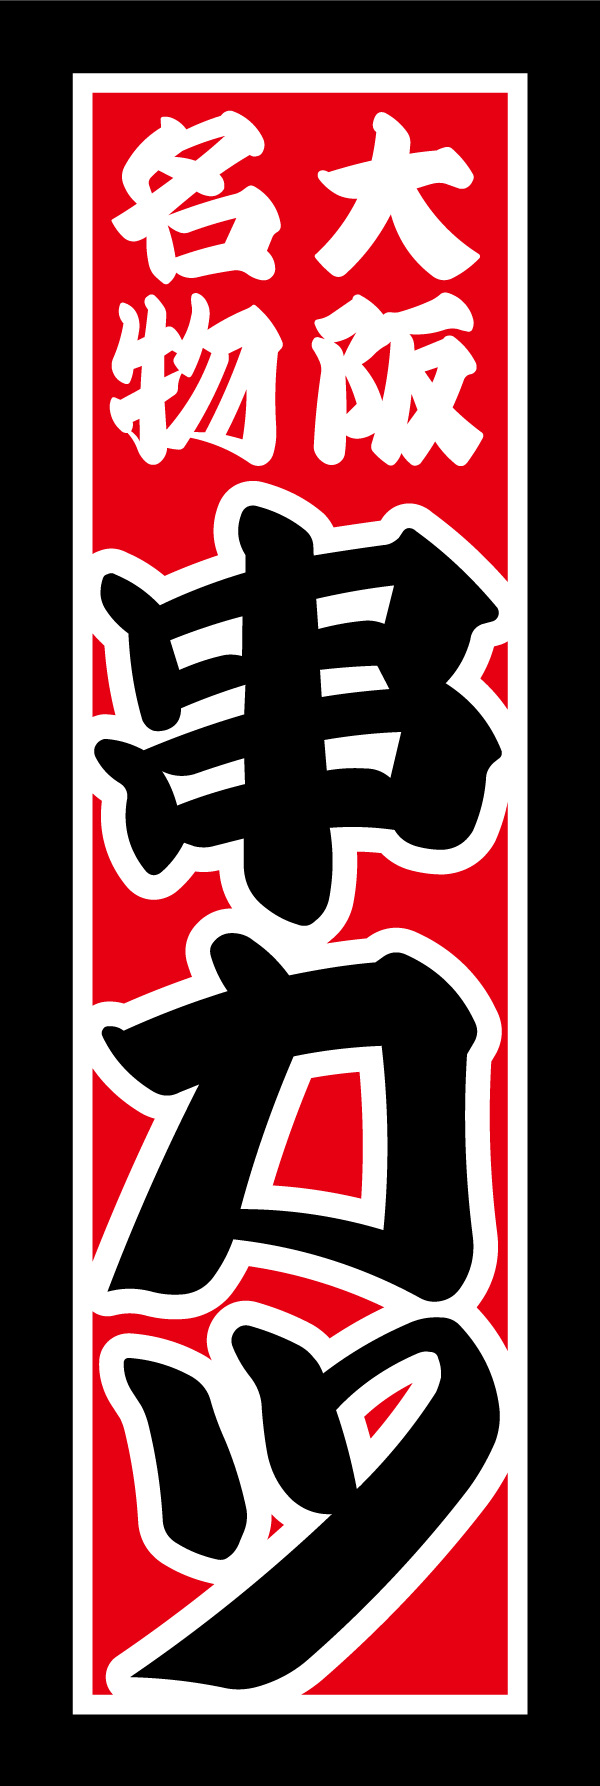 串かつ 07「串カツ」ののぼりです。大阪名物の串カツをイメージし、コテコテで派手なデザインにしあげました。(Y.M) 